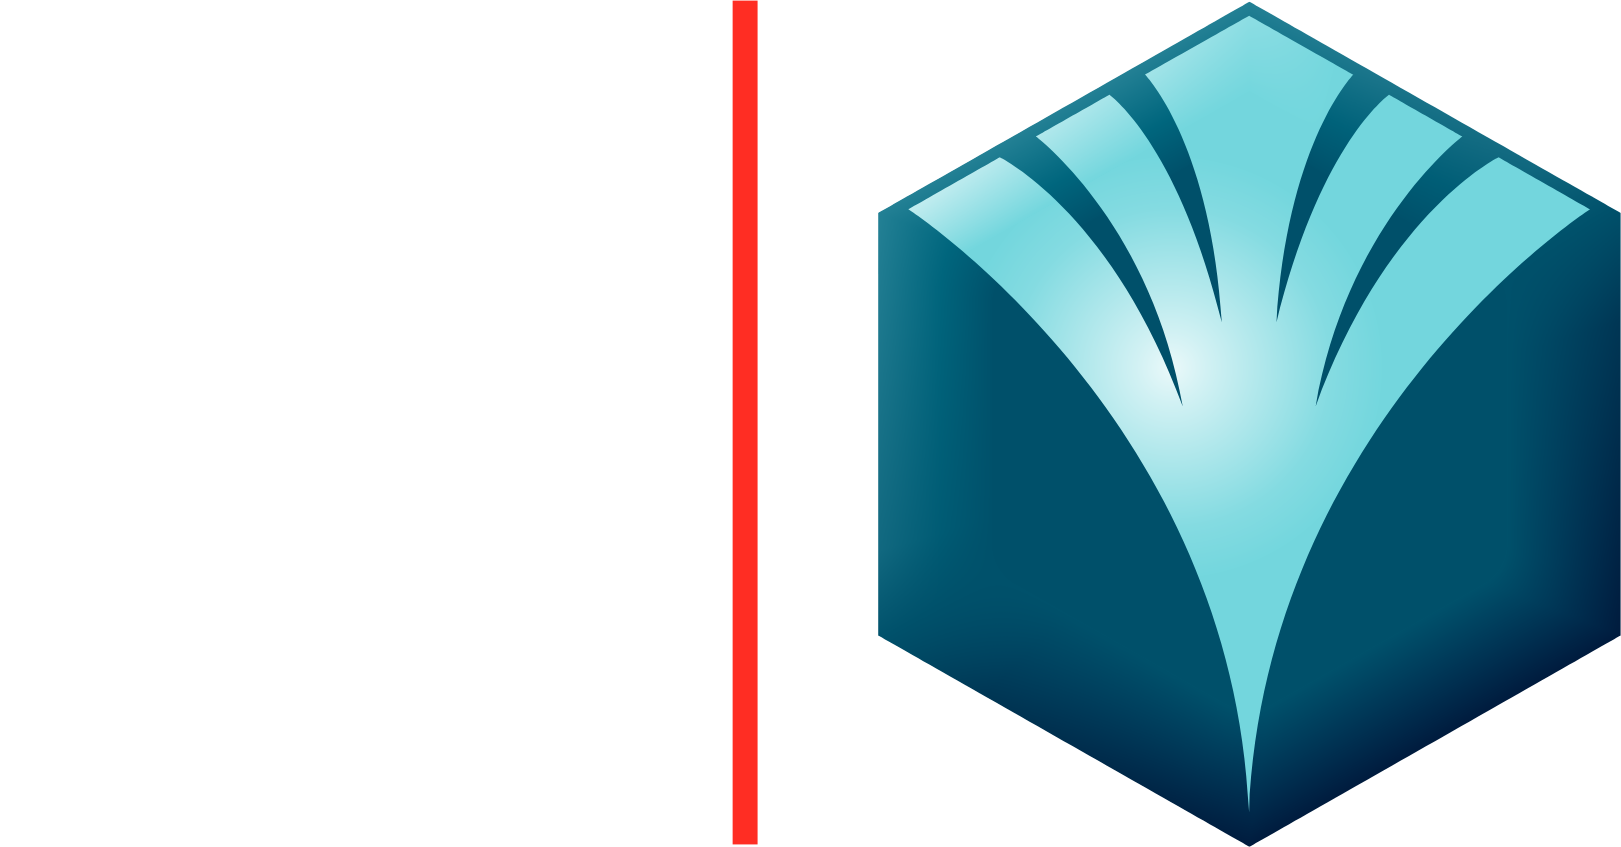 Banque Saudi Fransi logo large for dark backgrounds (transparent PNG)